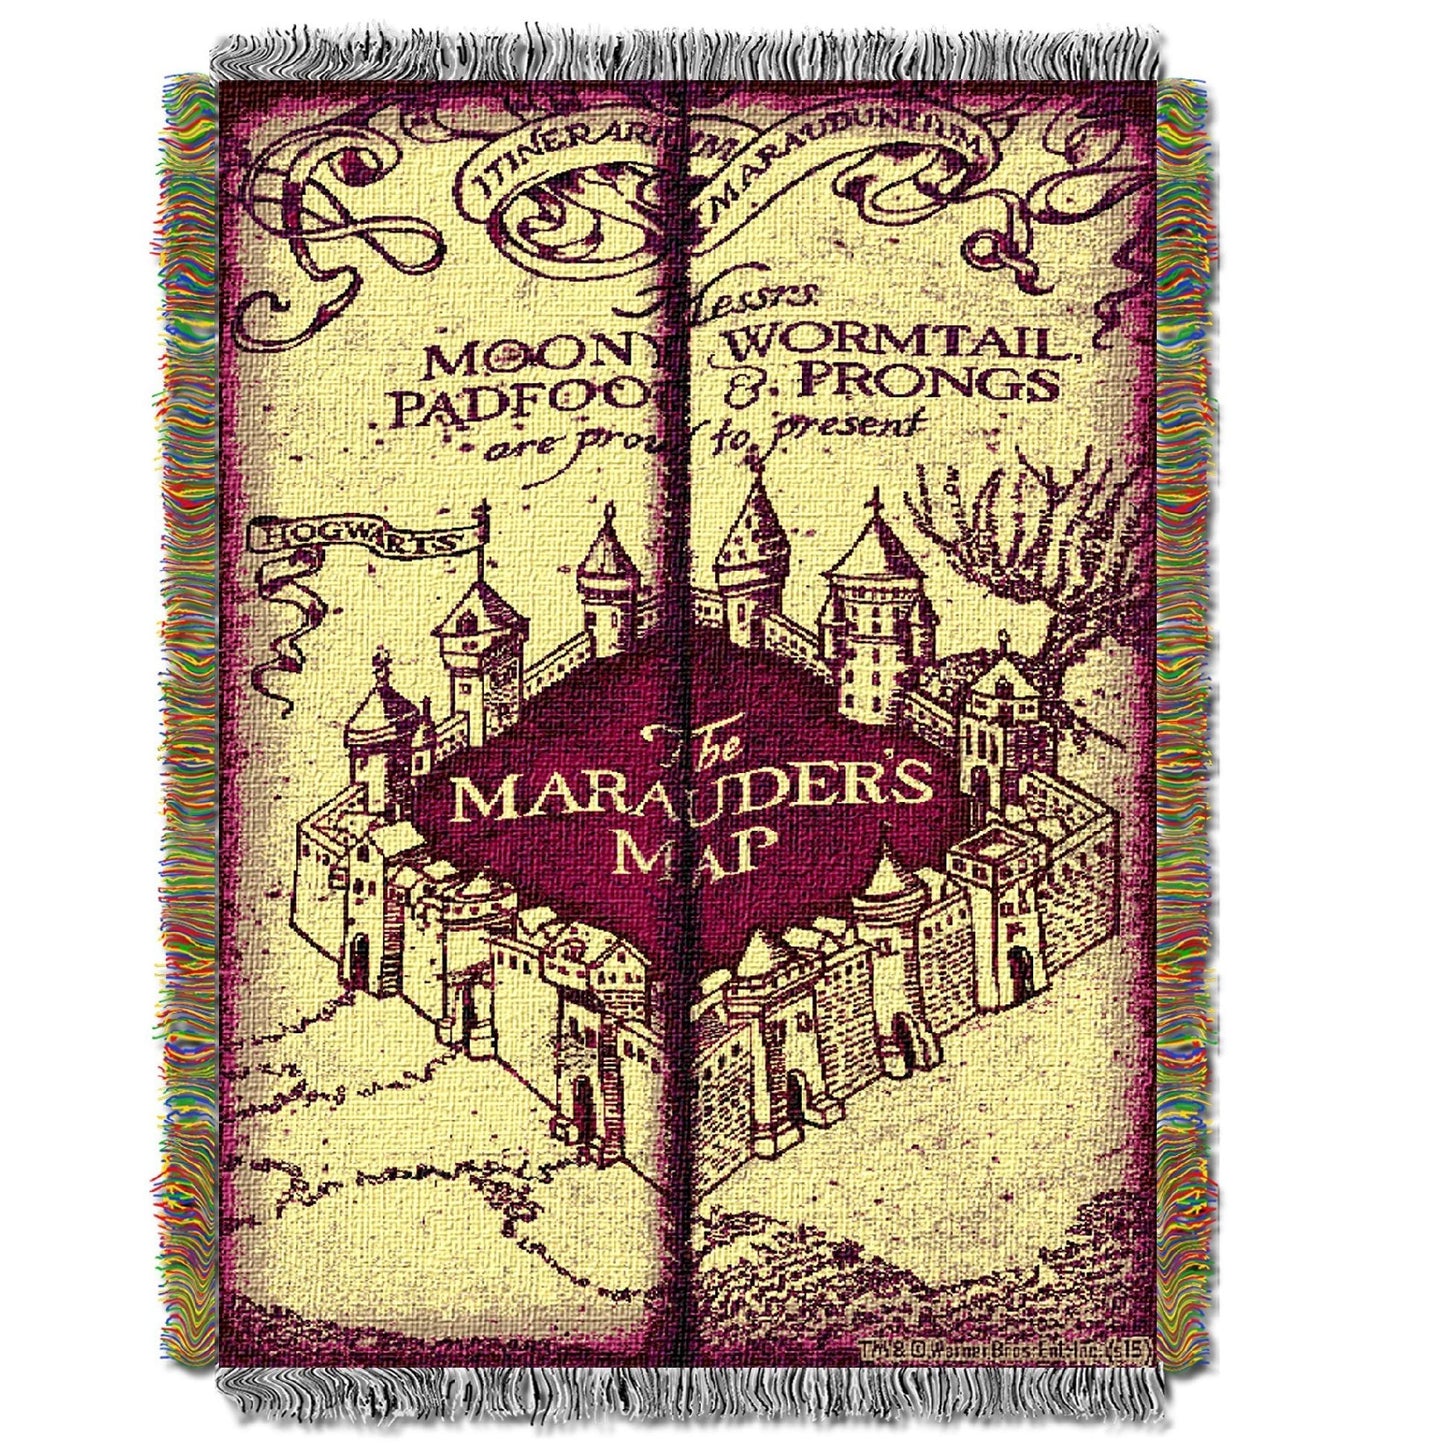 Manta de tapiz tejida con licencia de mapa de los Merodeadores de Harry Potter de 48 "x 60" de The Northwest Company